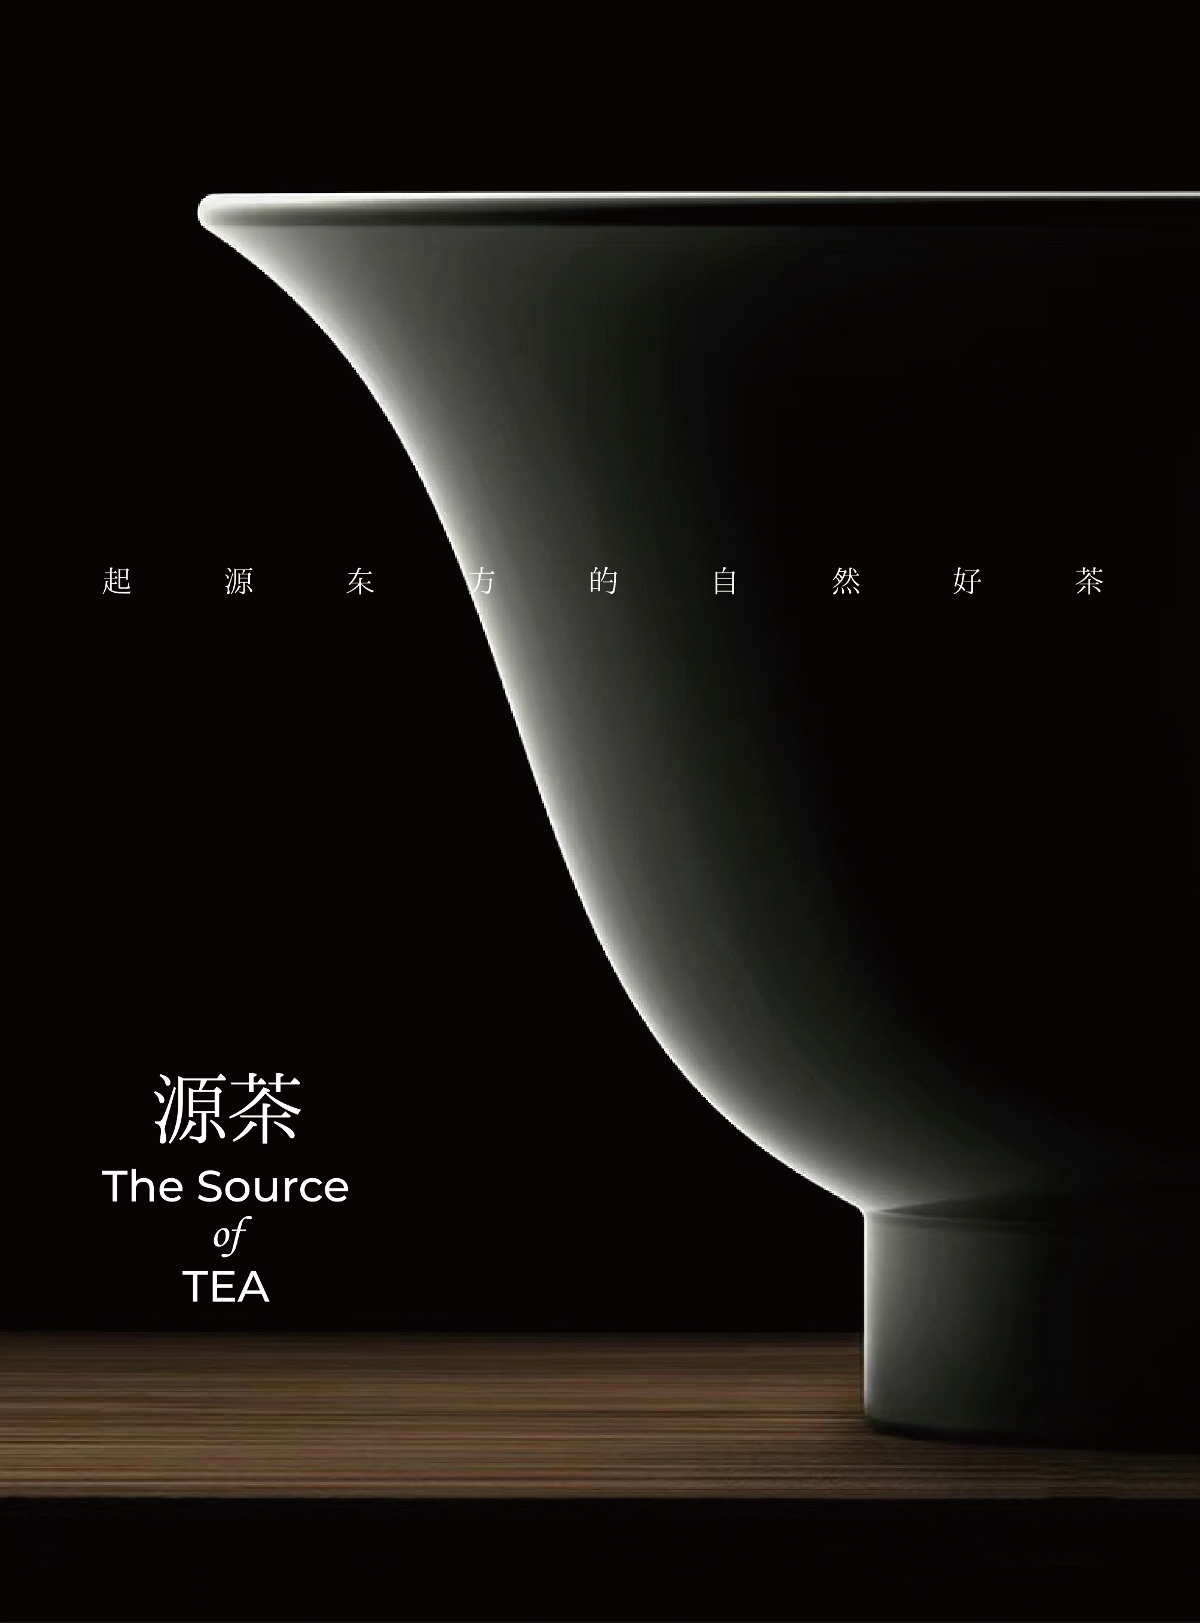 茶品牌VI设计 礼盒包装设计 产品包装设计 线下茶饮